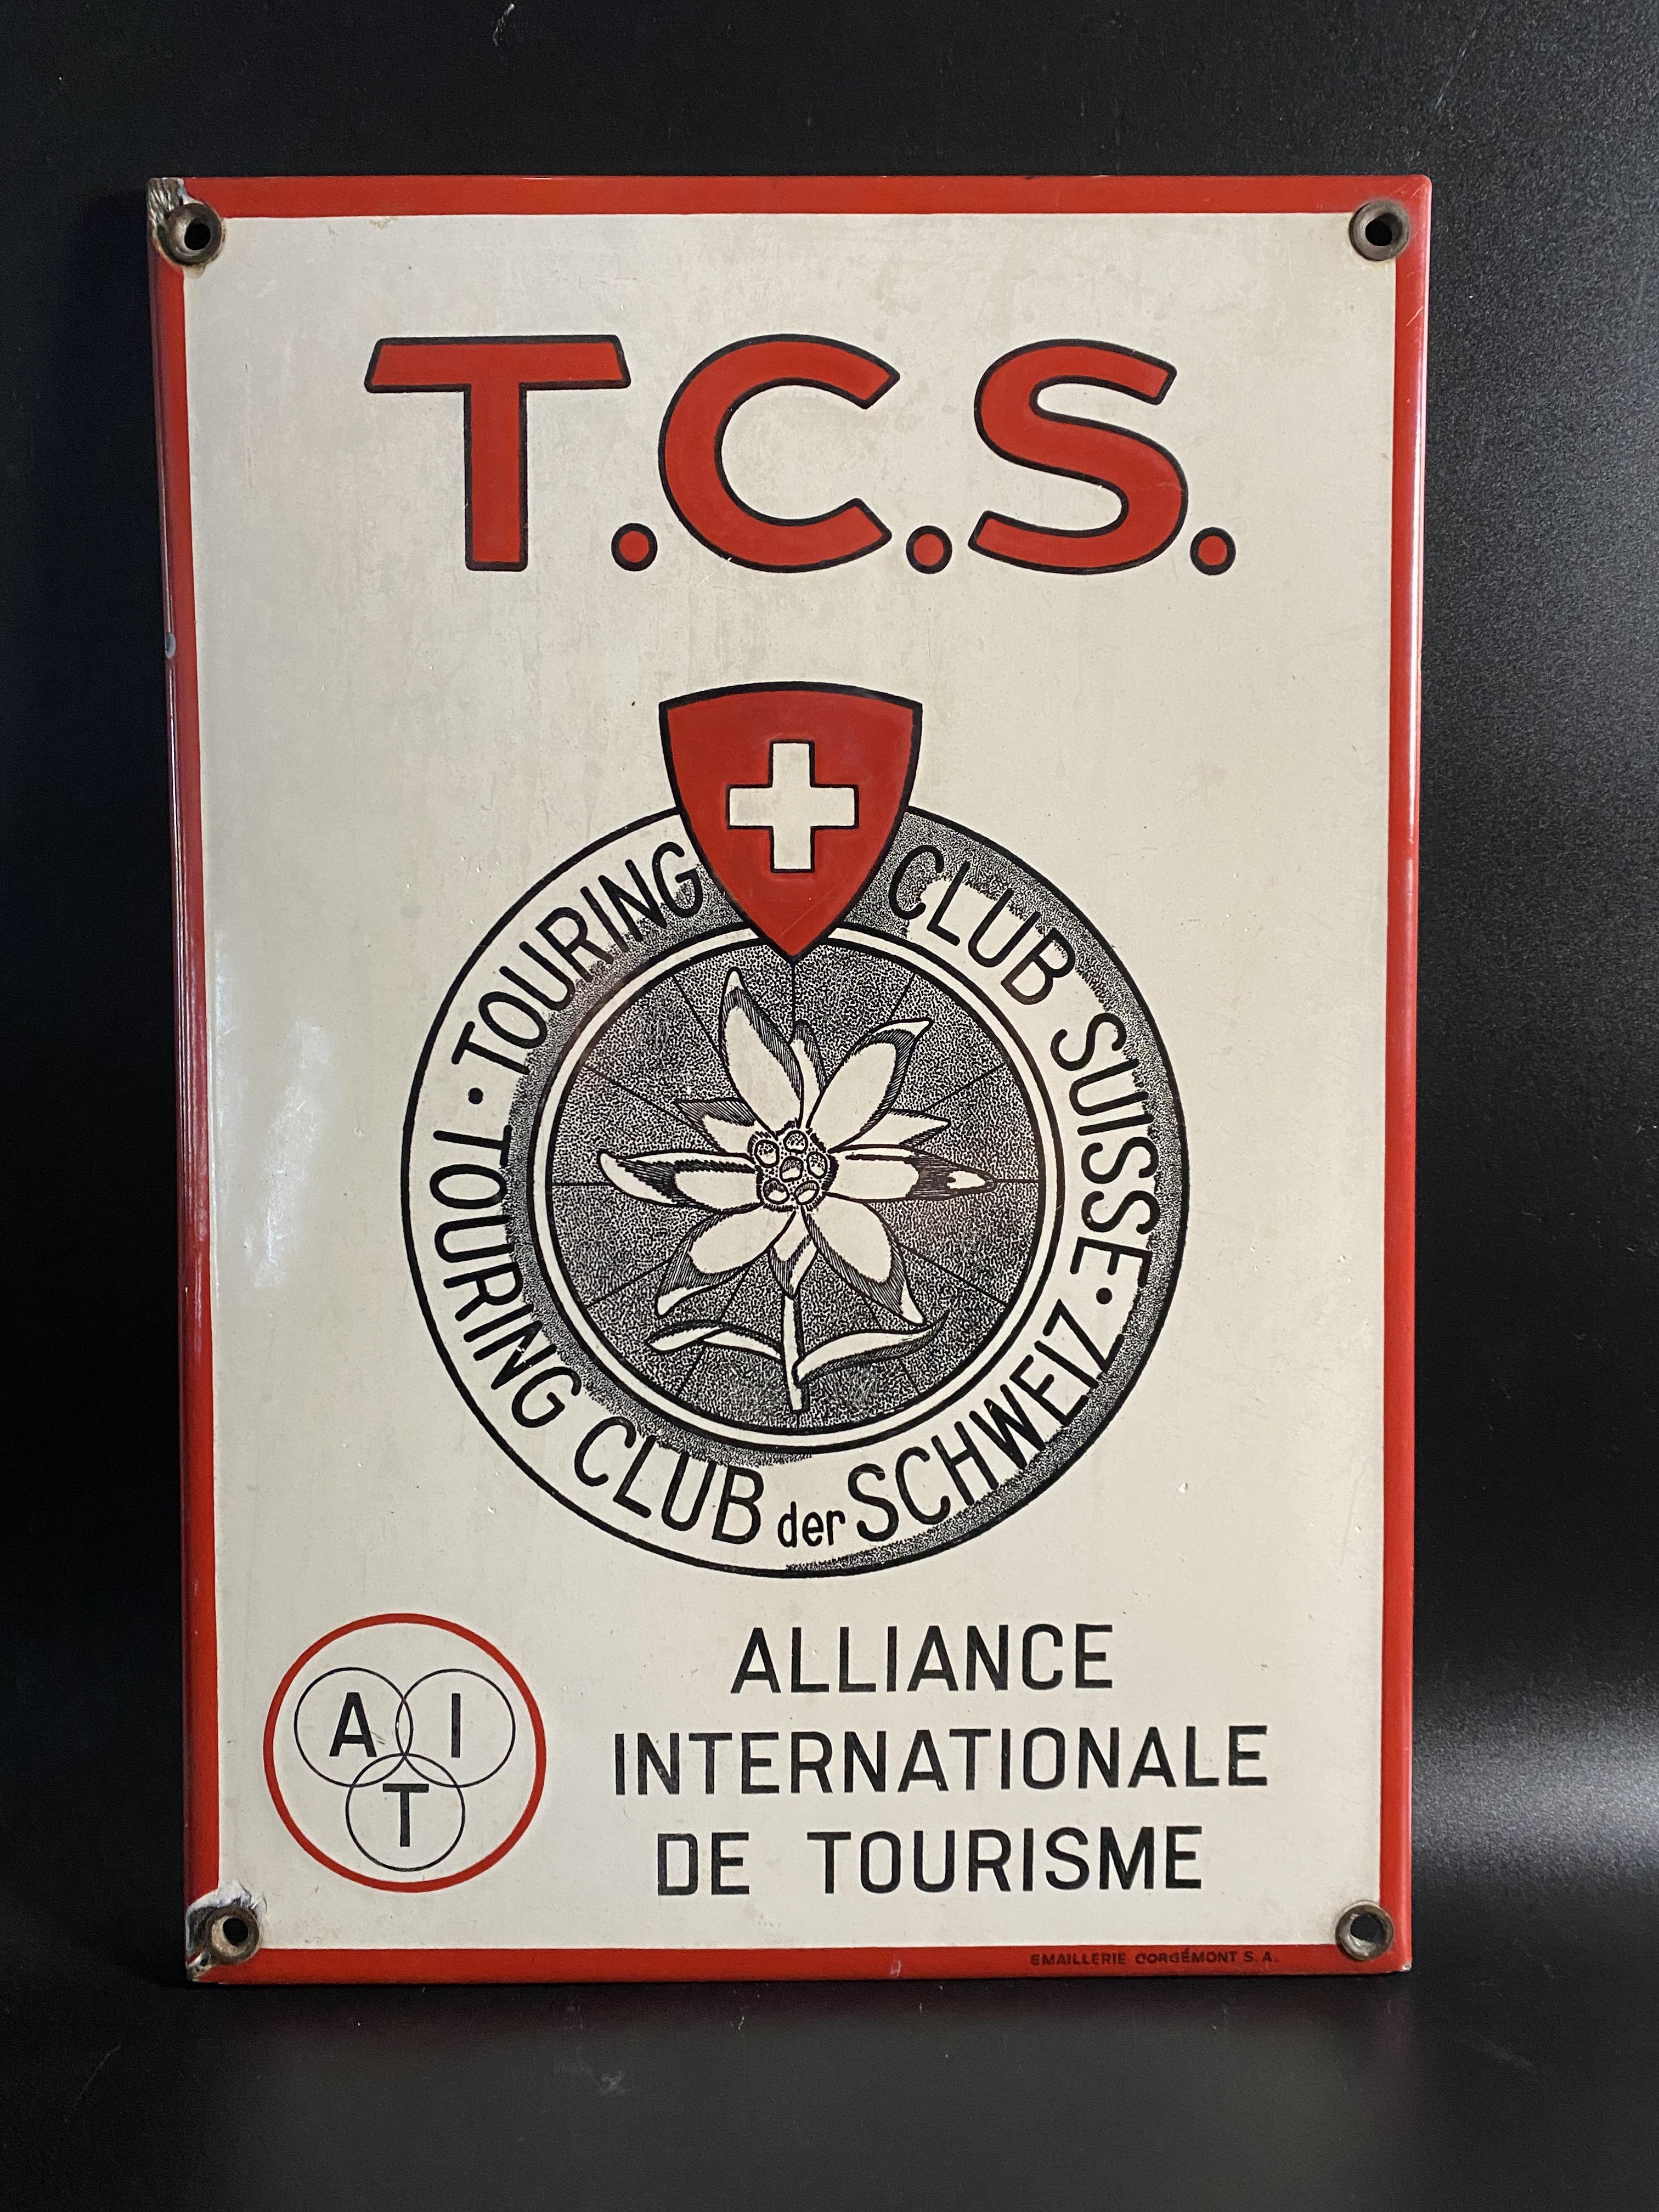 Altes Emailschild TCS Touring Club Suisse